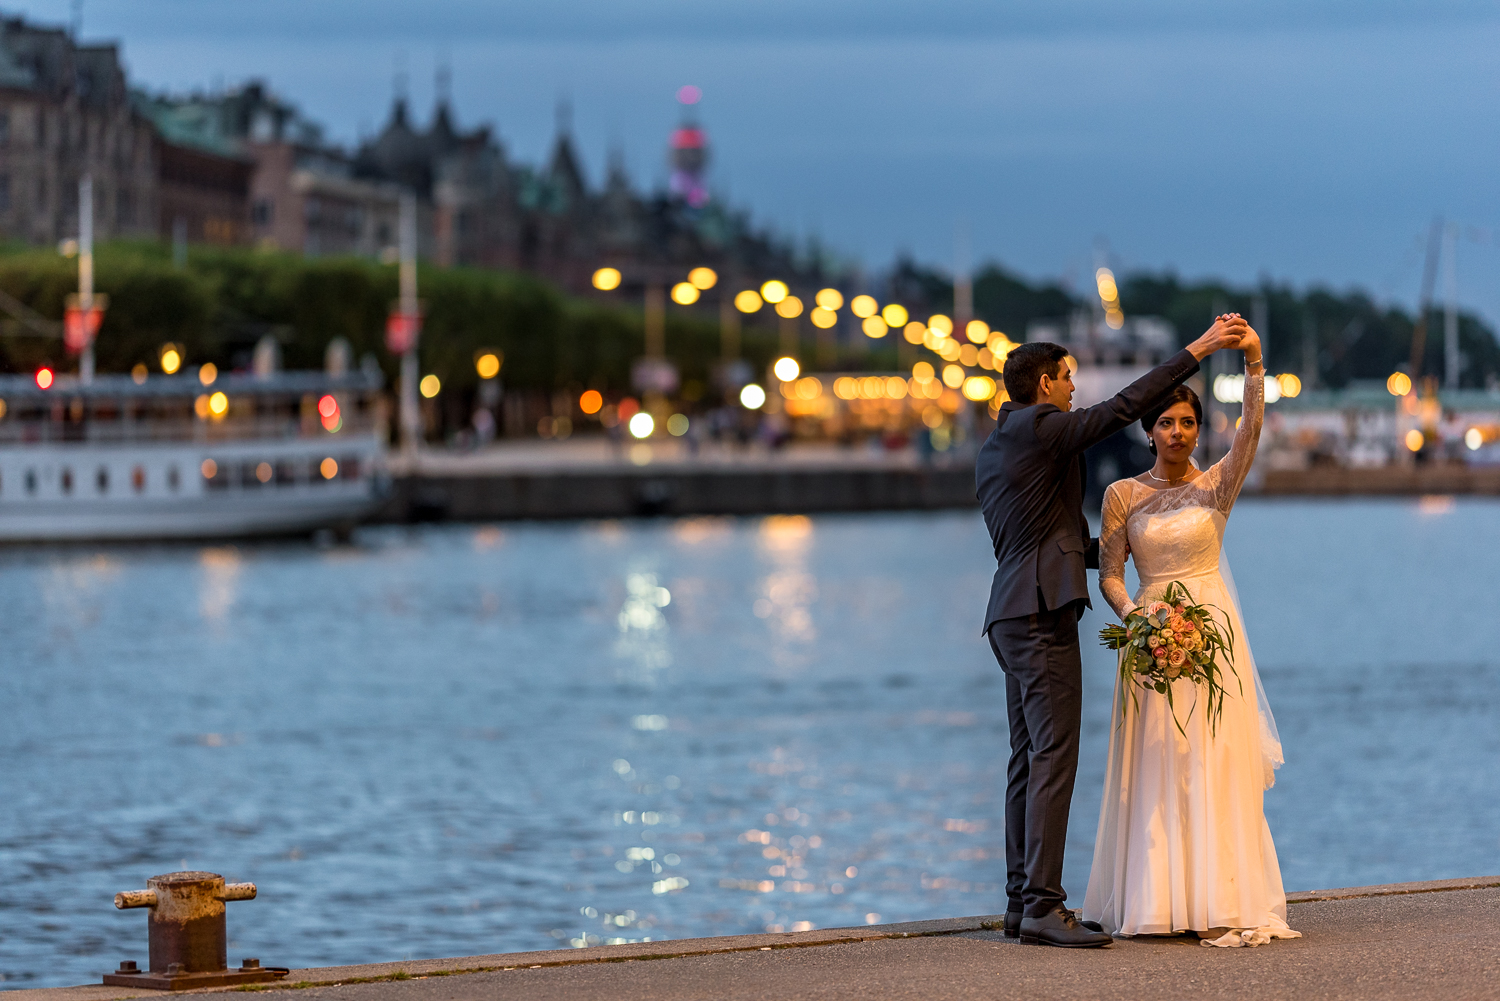 Dance during a wedding photo session in Stockholm, Strandvägen